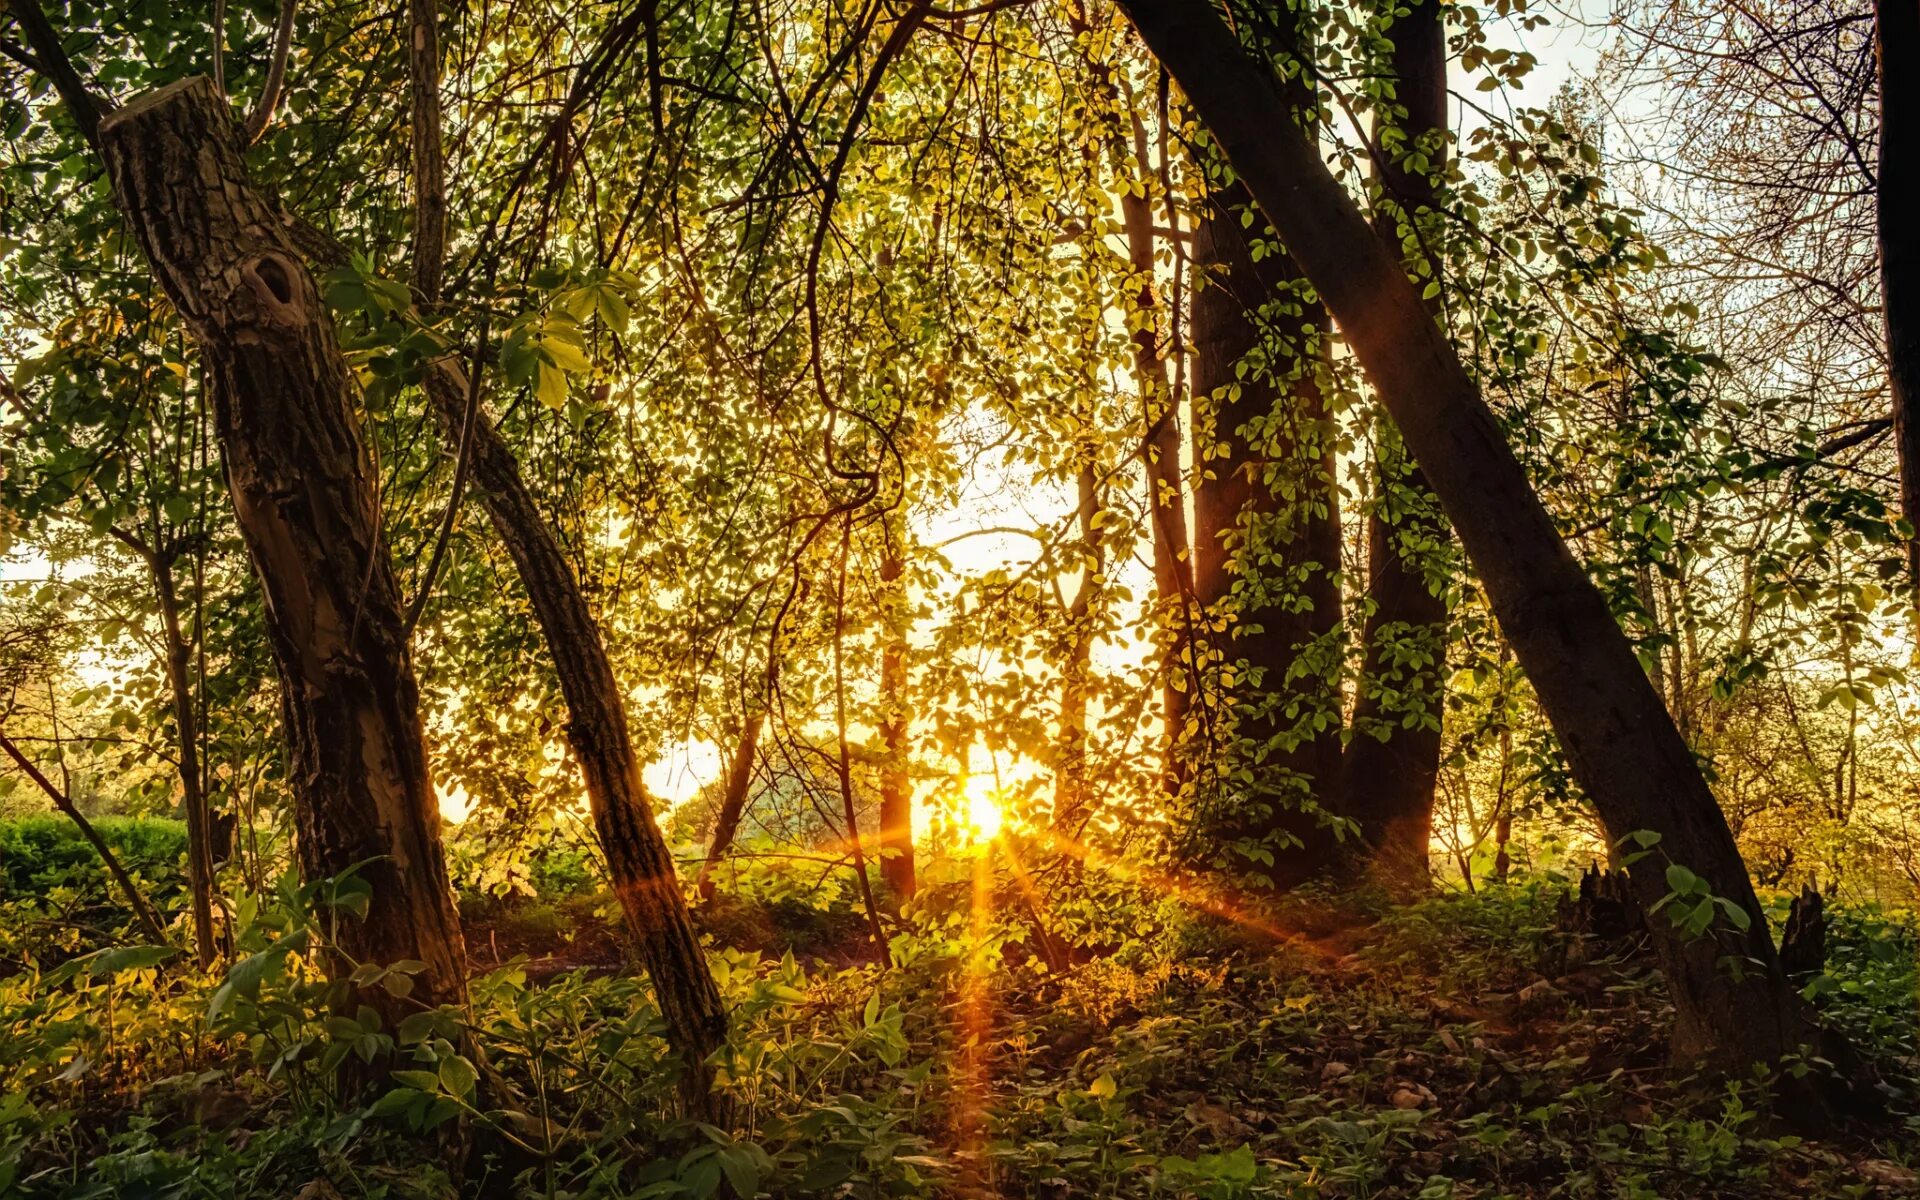 Дерево освещенное солнцем. Лес Освещенный солнцем. "Солнце в лесу". Солнечный свет сквозь деревья. Солнце поднимается лес озаряется ярко красным светом